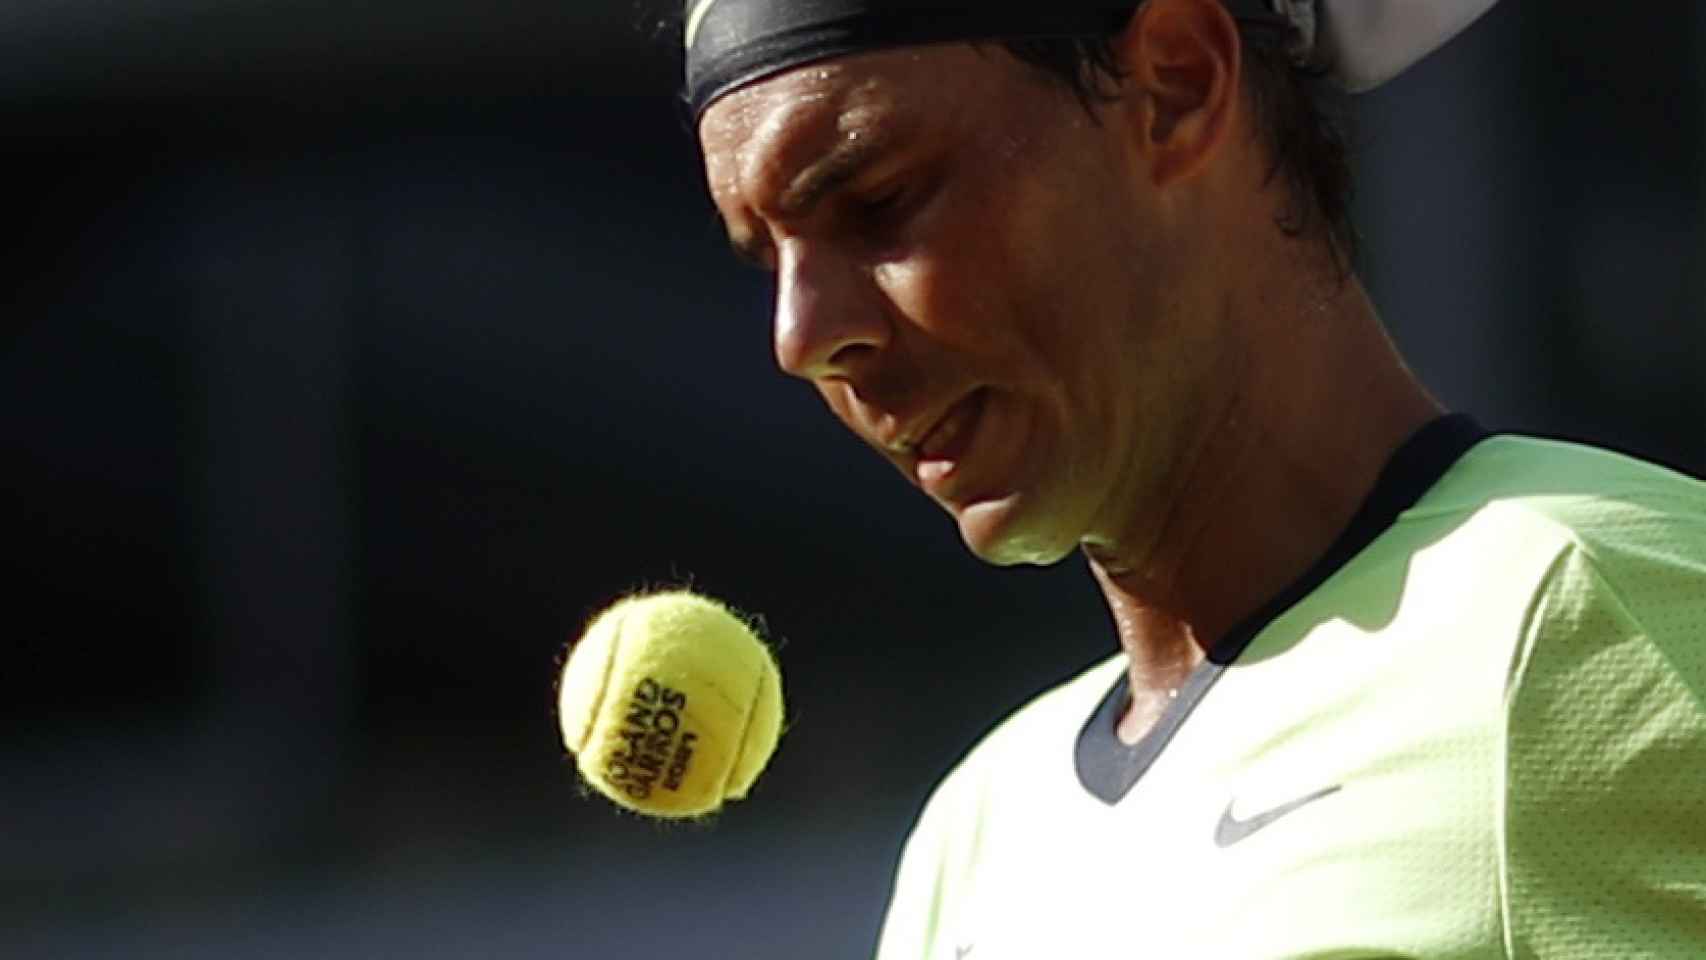 Rafa Nadal, escogiendo pelota antes de sacar en Roland Garros 2021